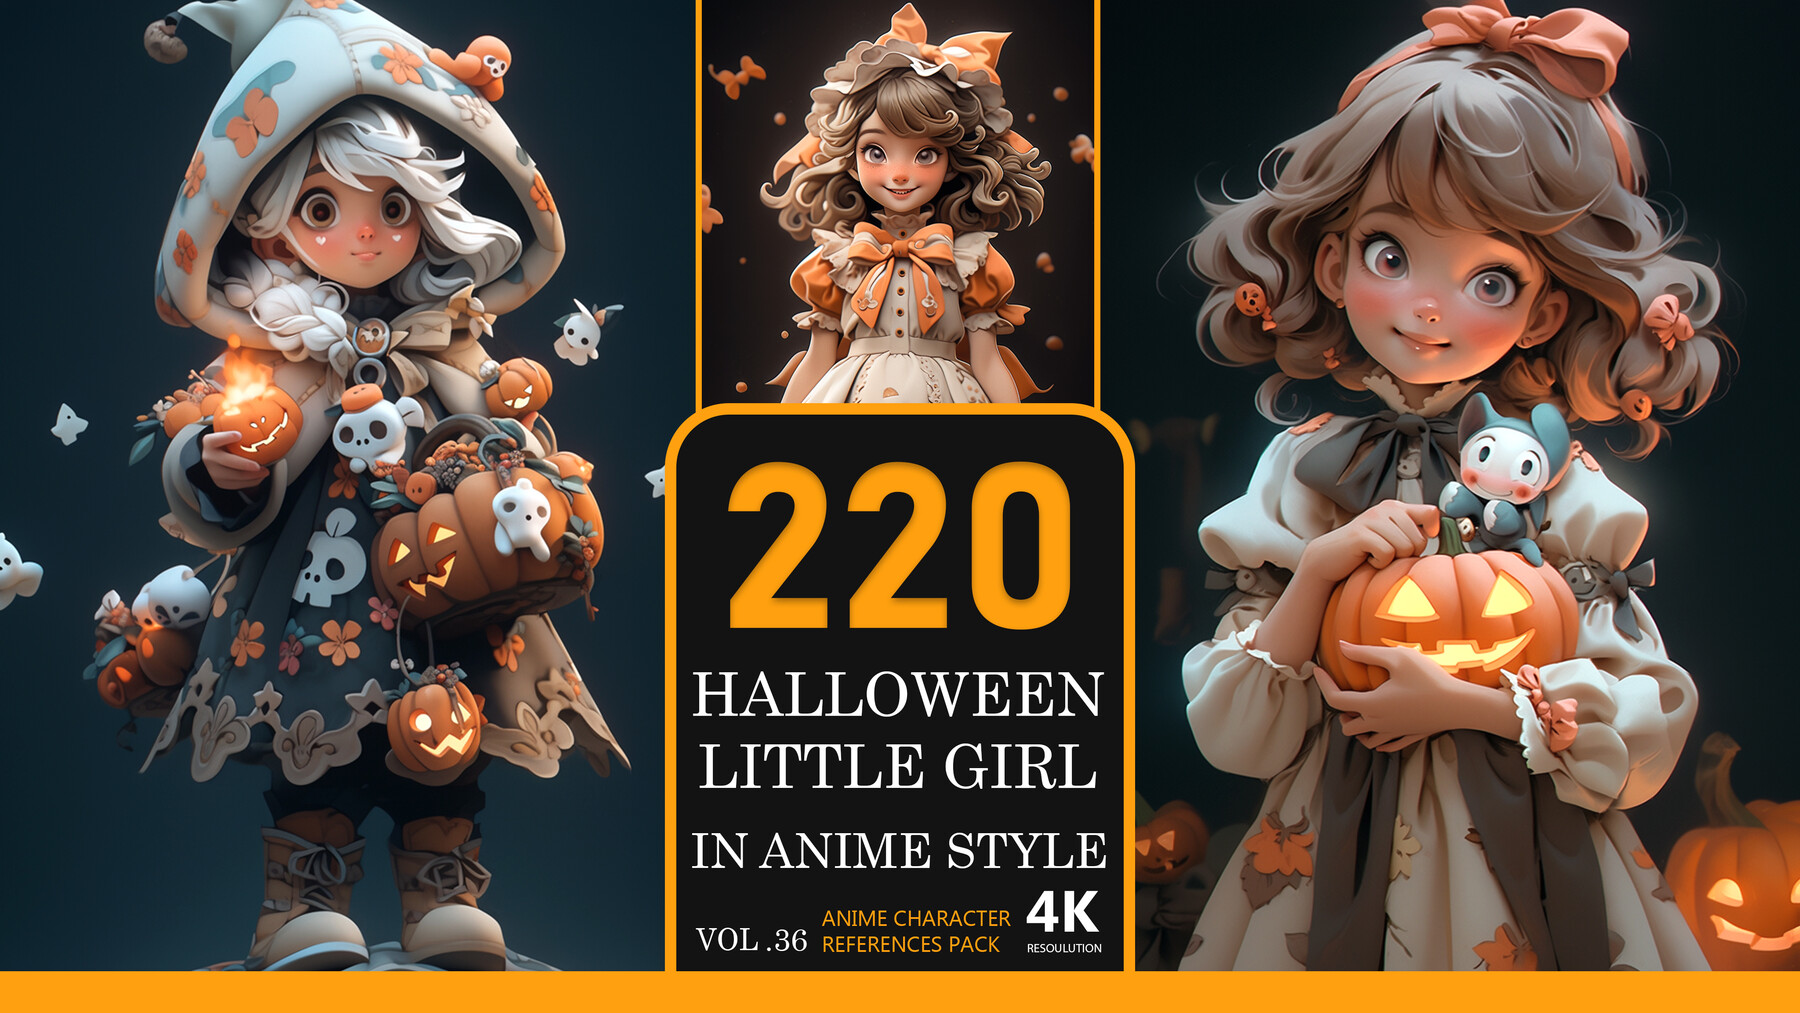 Little　Character　Vol.36-4K|Anime　Girl　Pack　Anime　In　Halloween　References　Artworks　ArtStation　Style